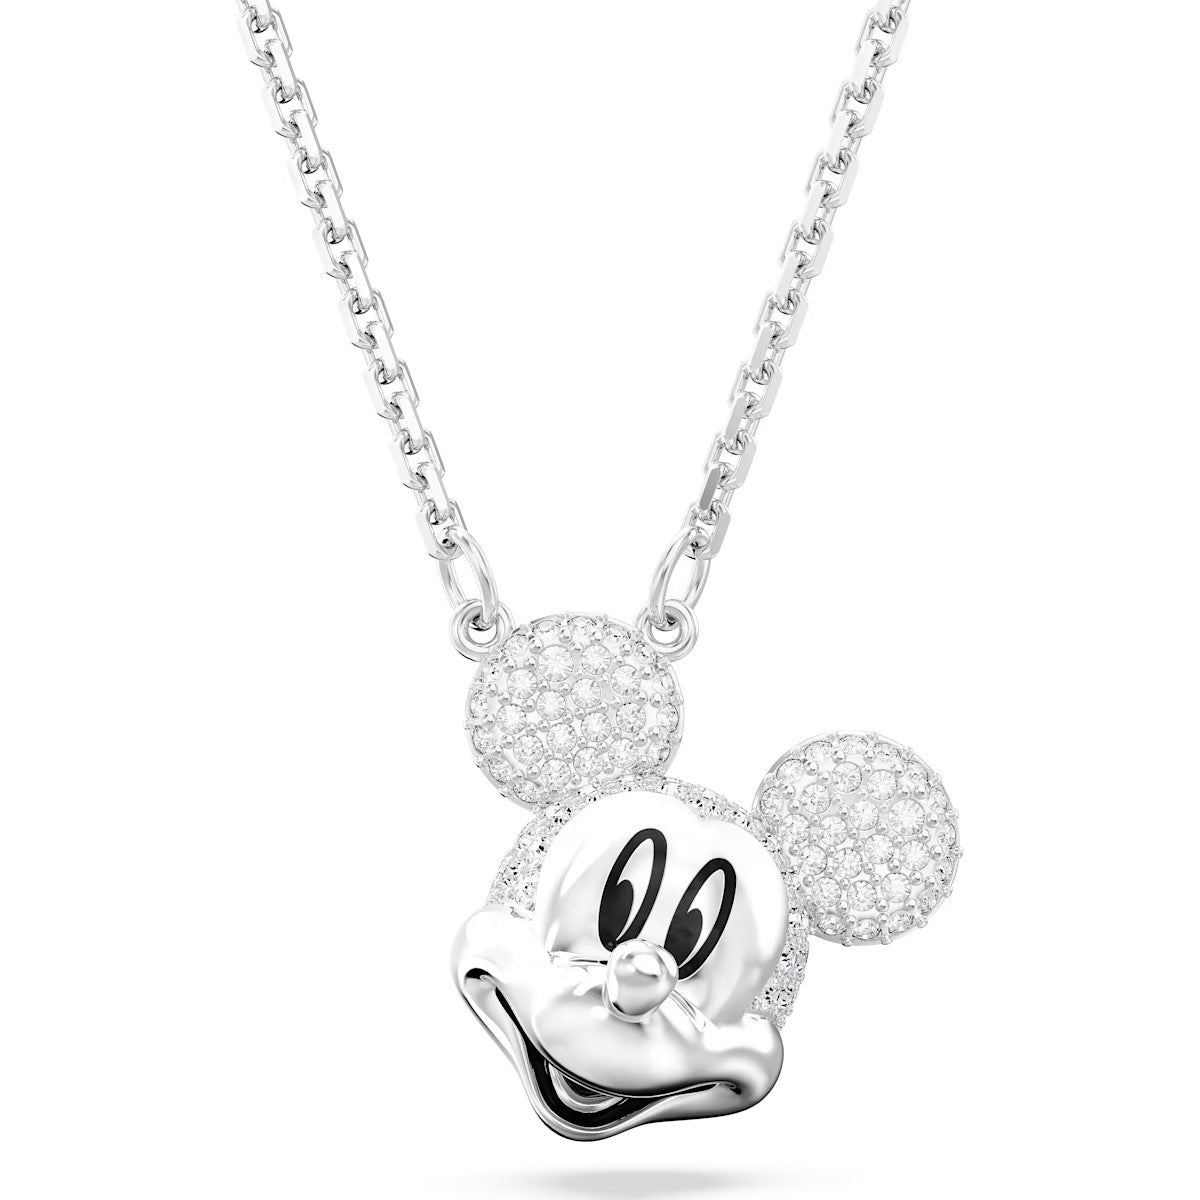 Swarovski Disney 100 - Colgante Mickey Mouse, blanco, Baño de rodio - 5669116 